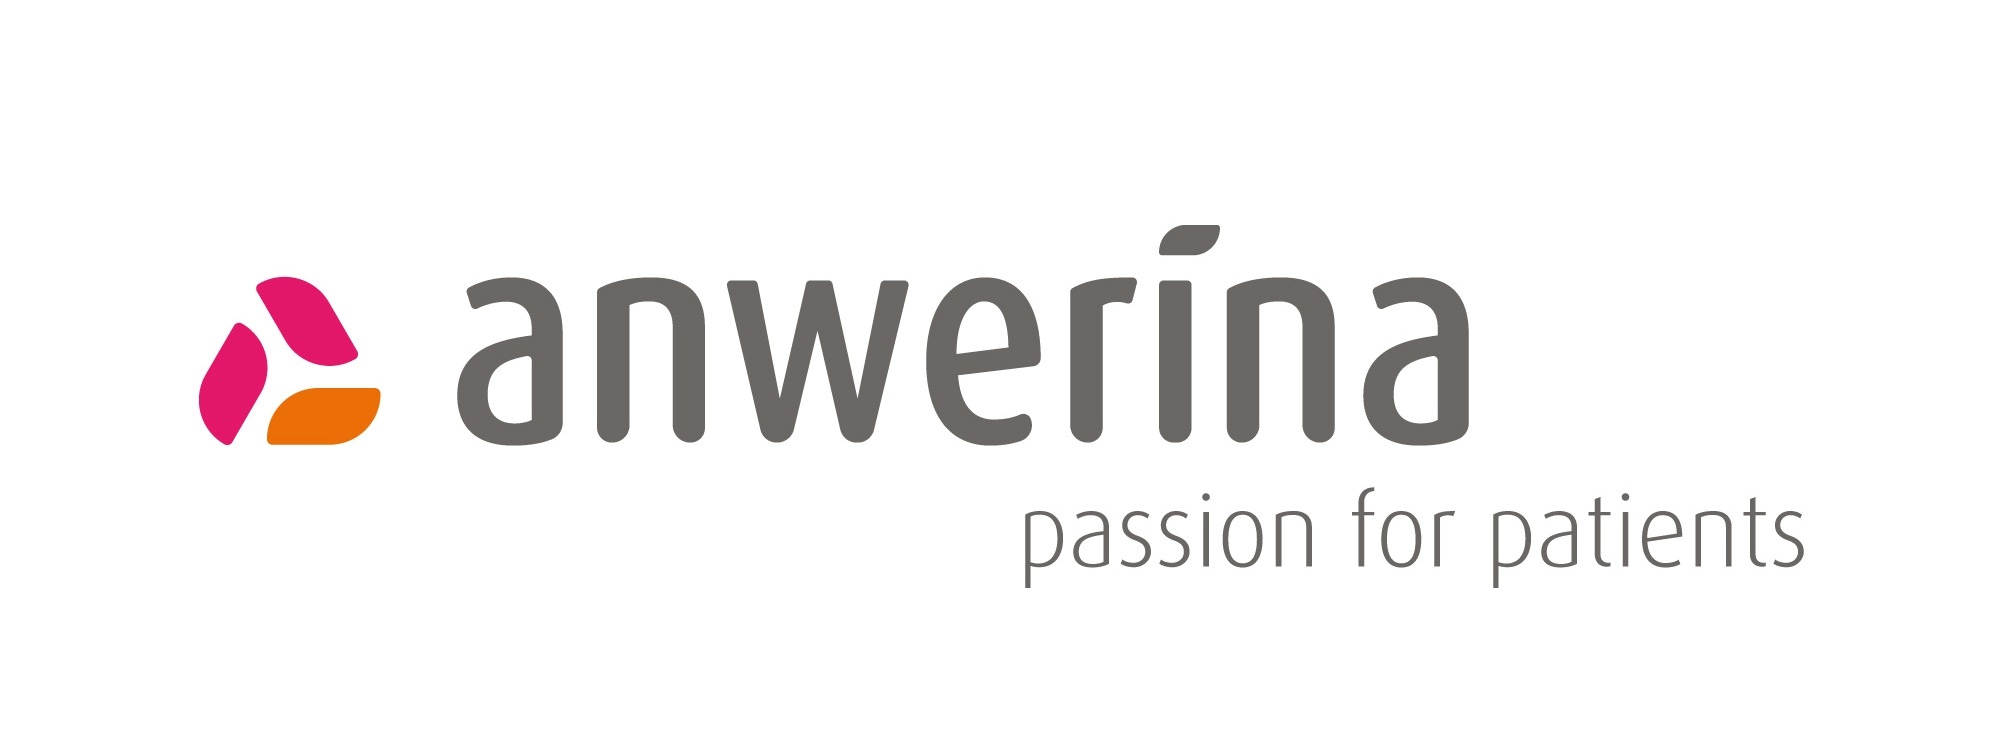 anwerina Logo